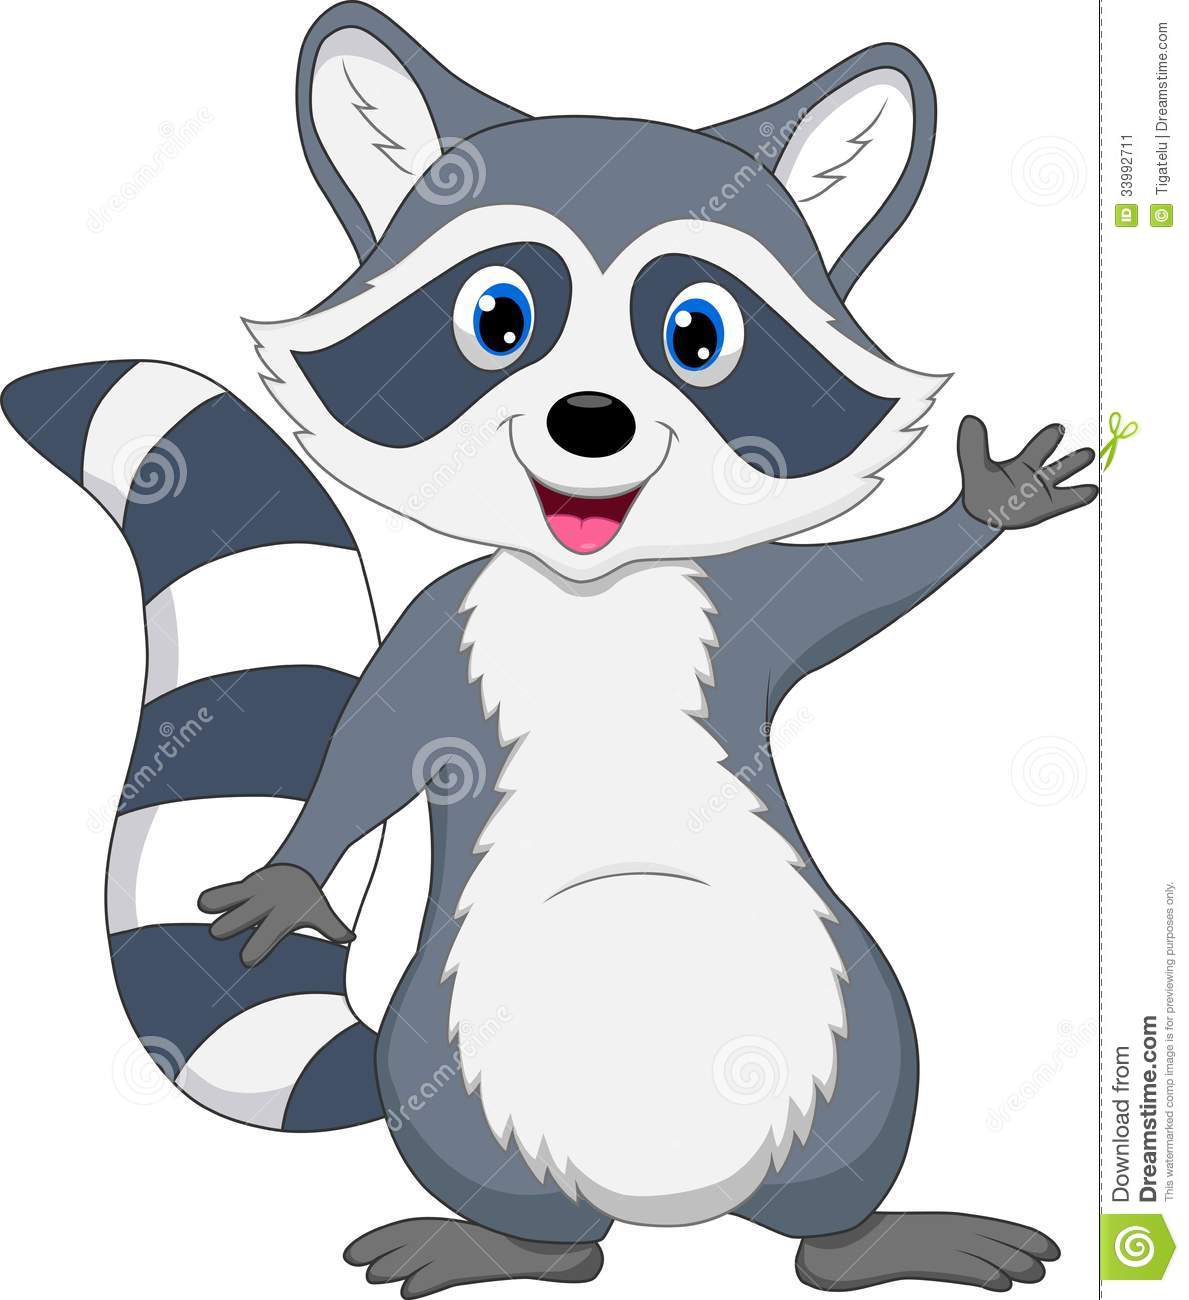 Raccoon. ValueClips Clip Art